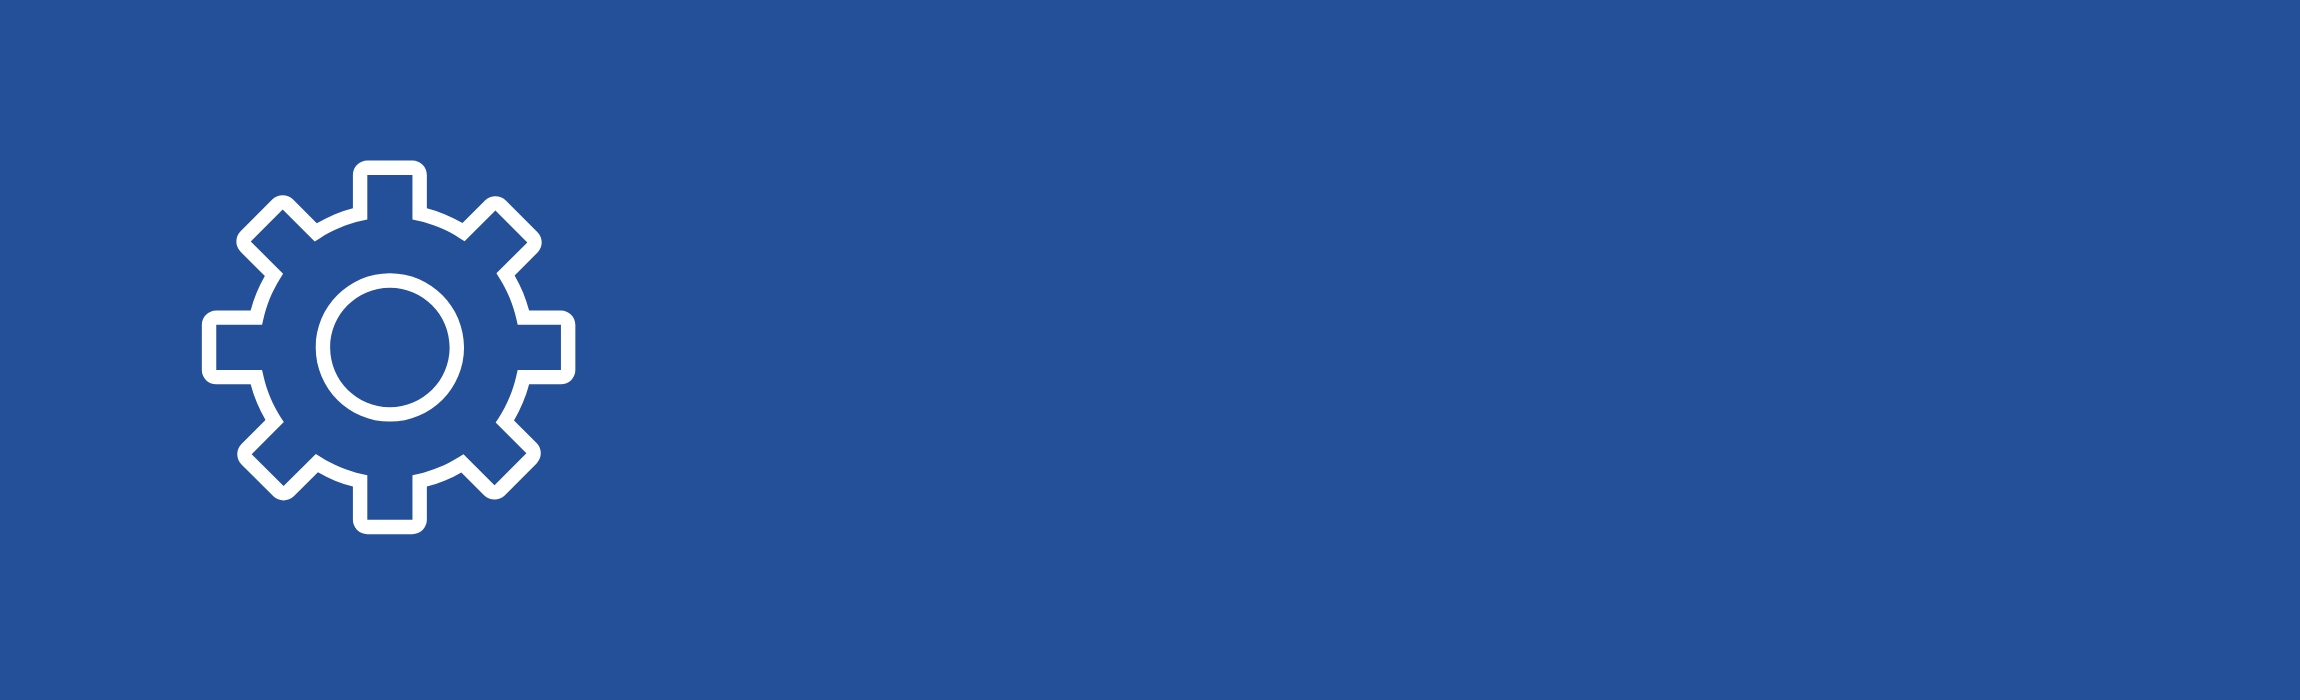 immagine stilizzata su sfondo blu con rotella dentata che simboleggia le impostazioni